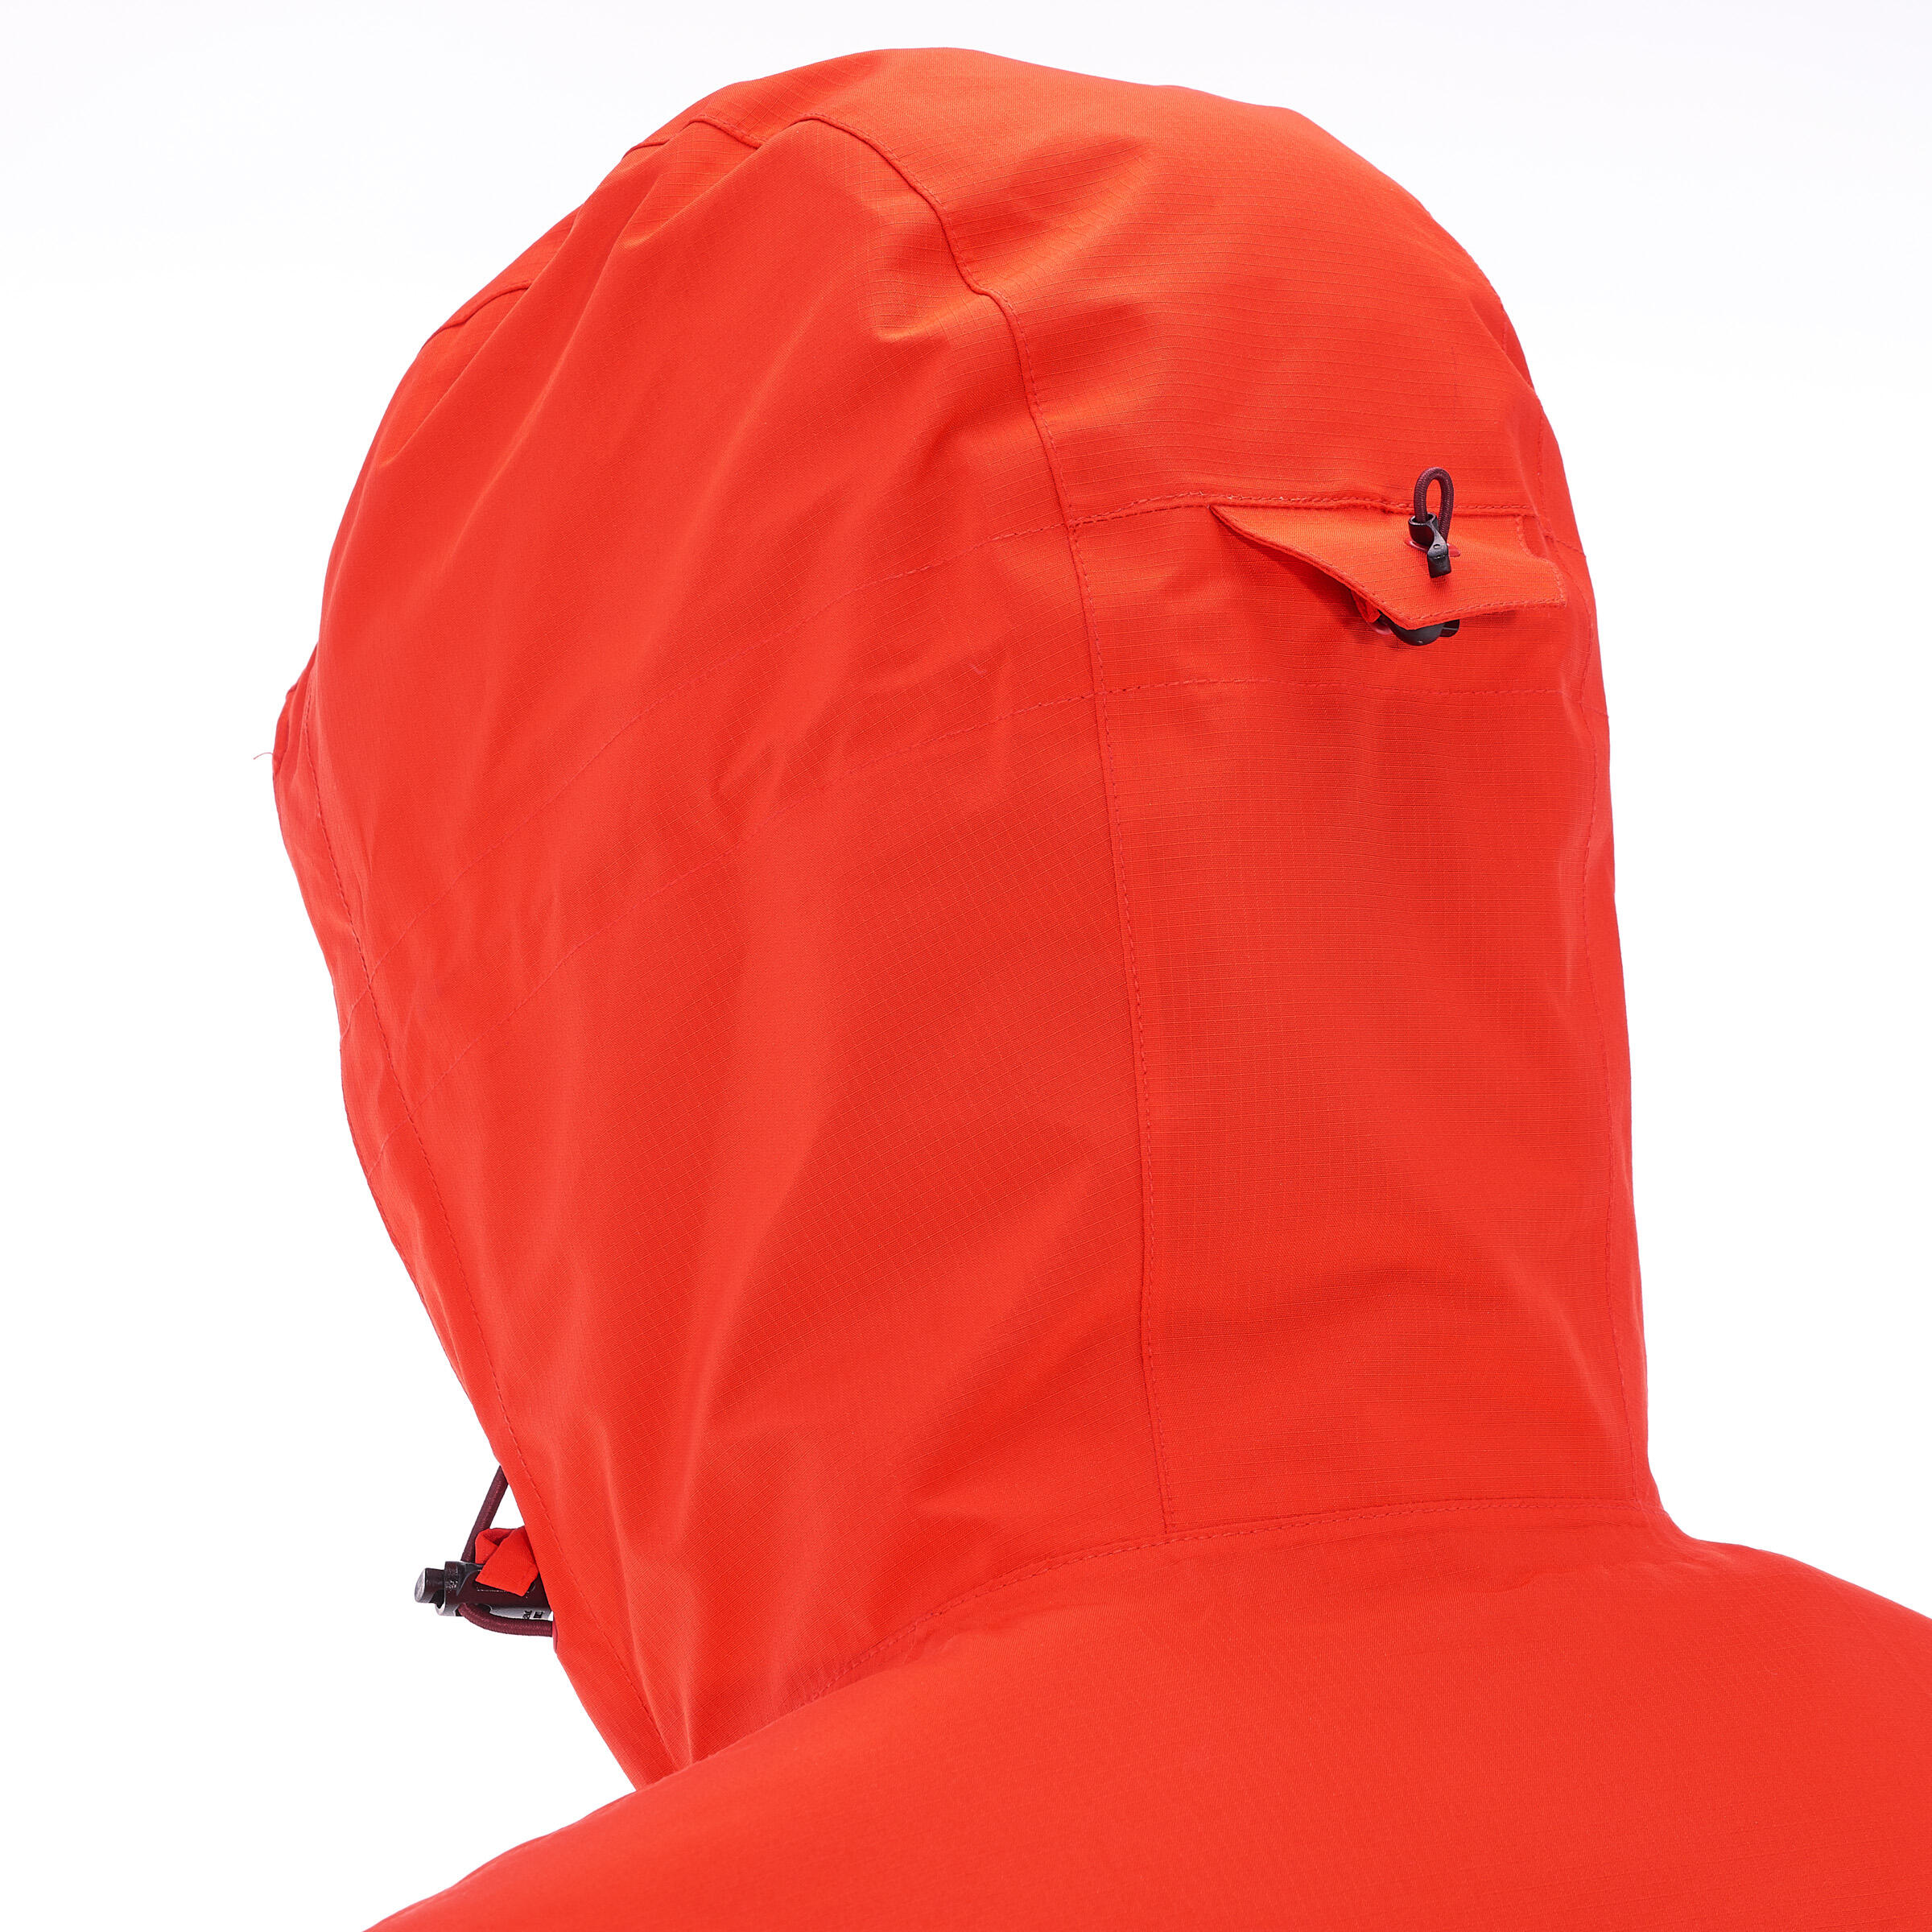 Rainwarm 500 3-in-1 Men's Trekking Jacket - Red 4/17